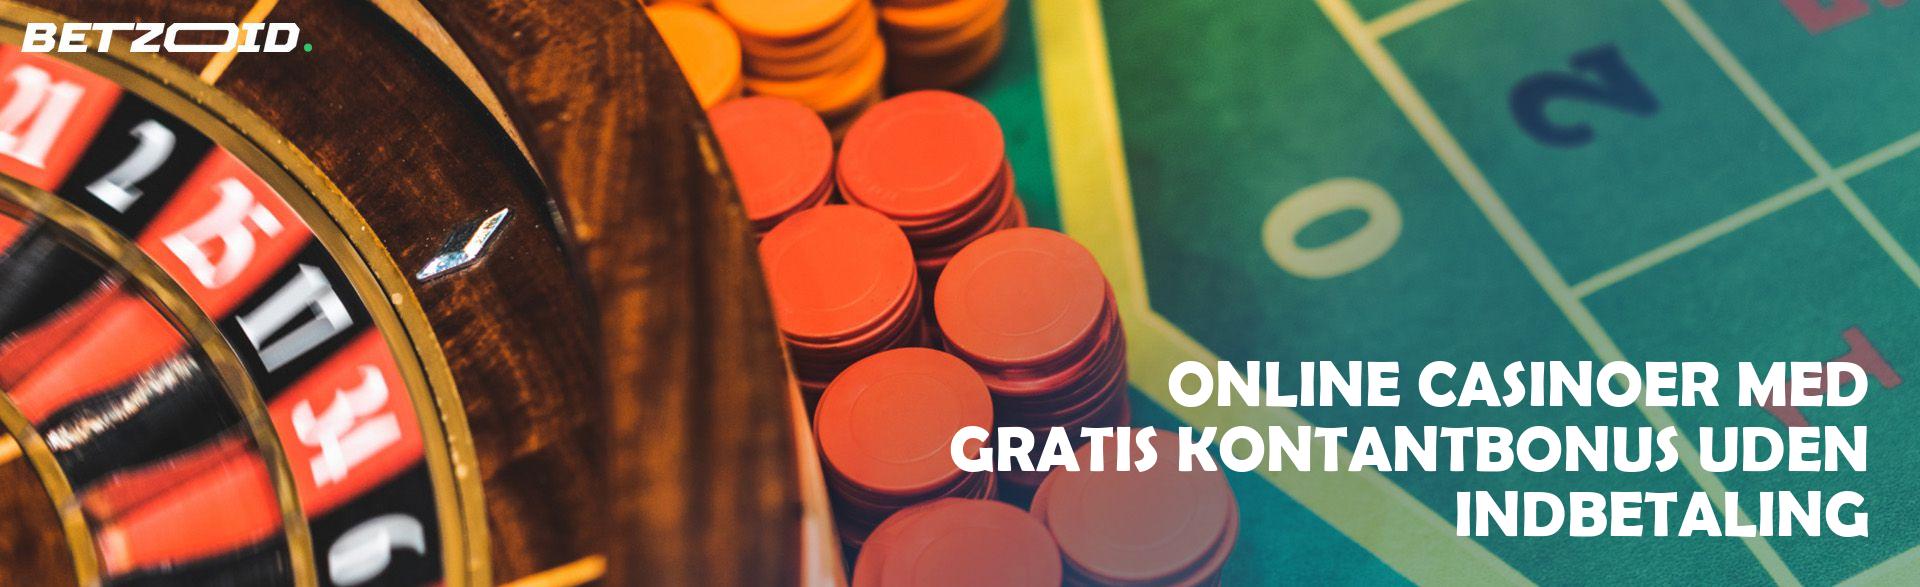 Online Casinoer med Gratis Kontantbonus uden Indbetaling.